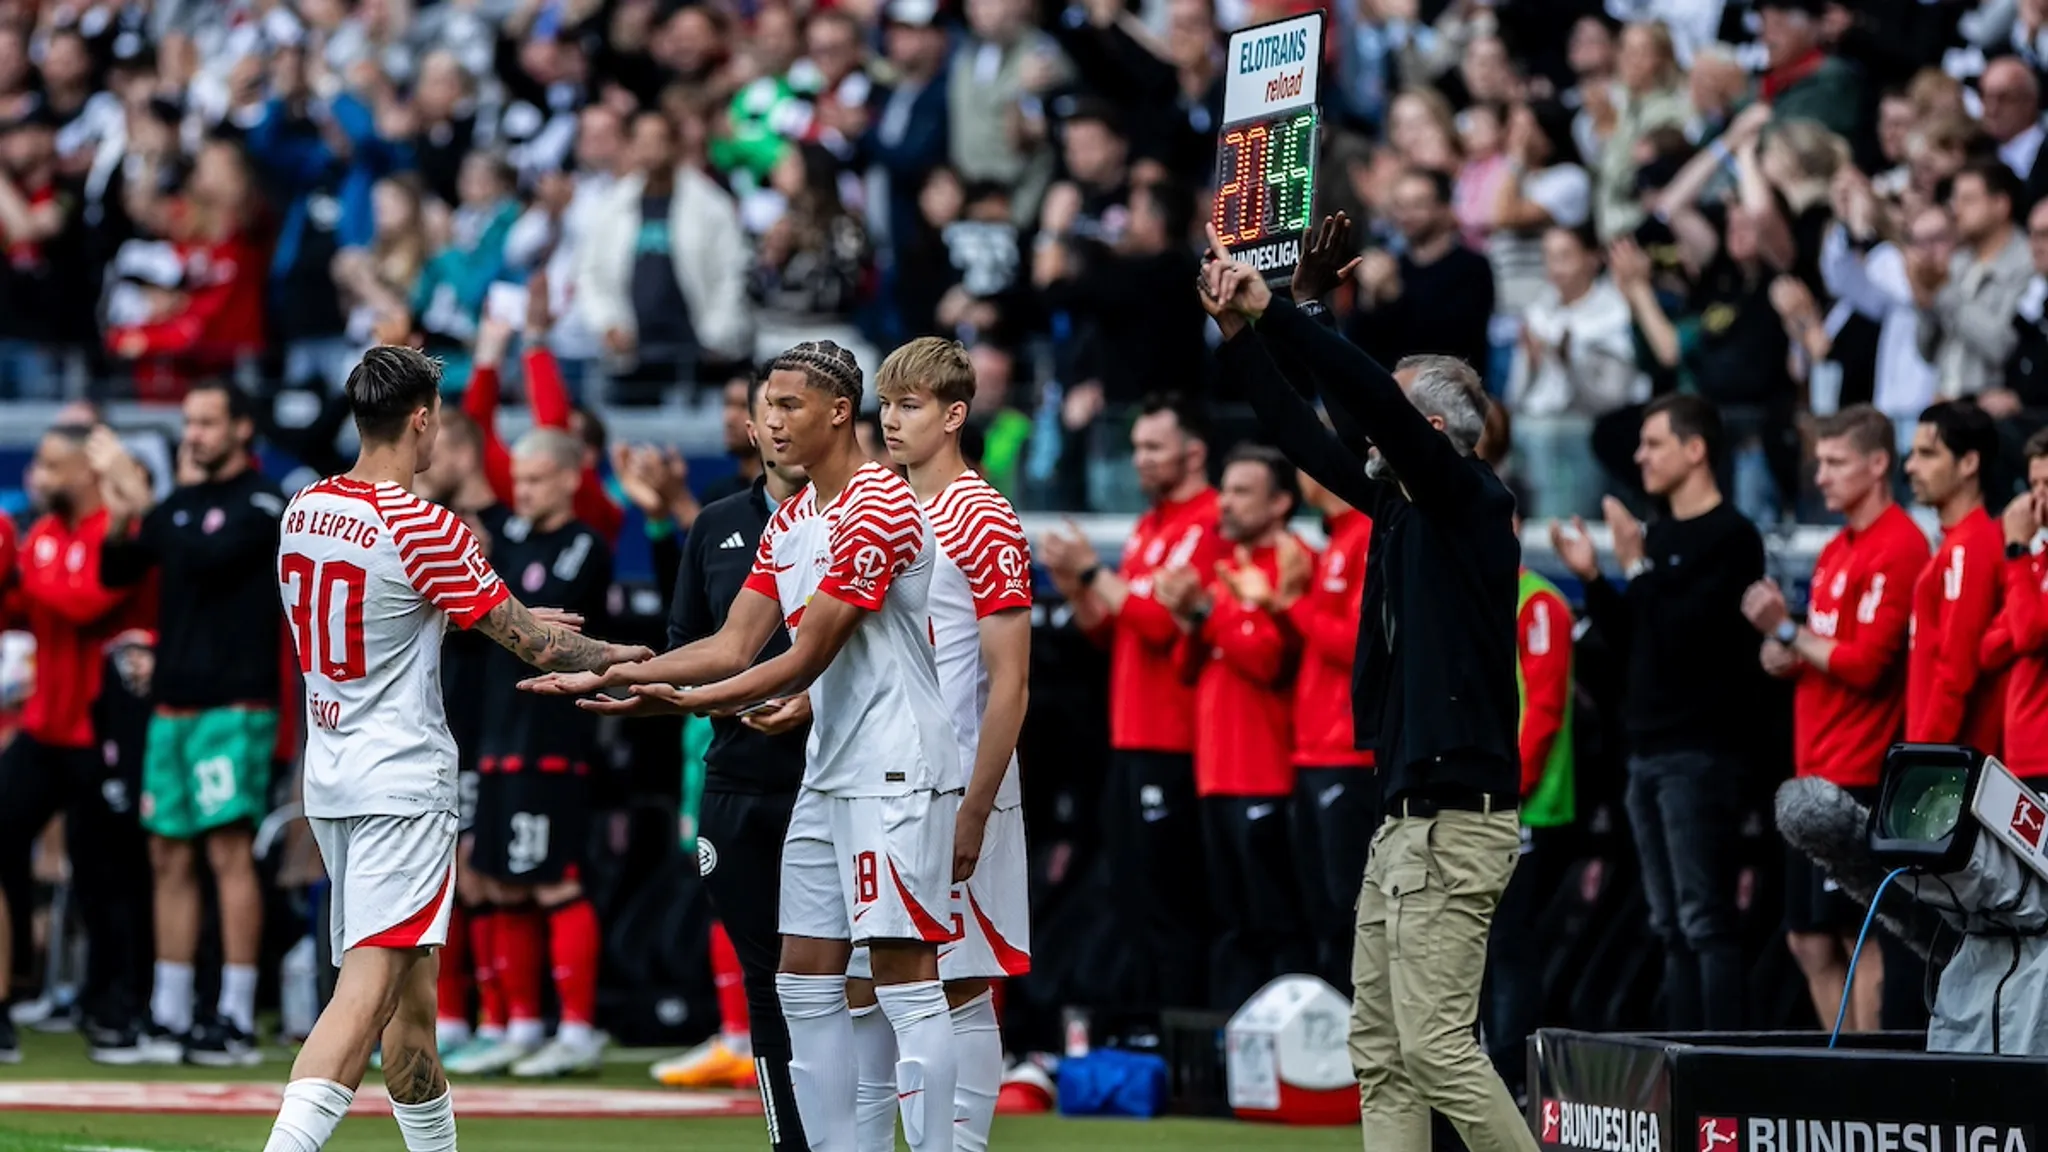 On matchday 34, Nuha Jatta made his Bundesliga debut together with Jonathan Norbye.